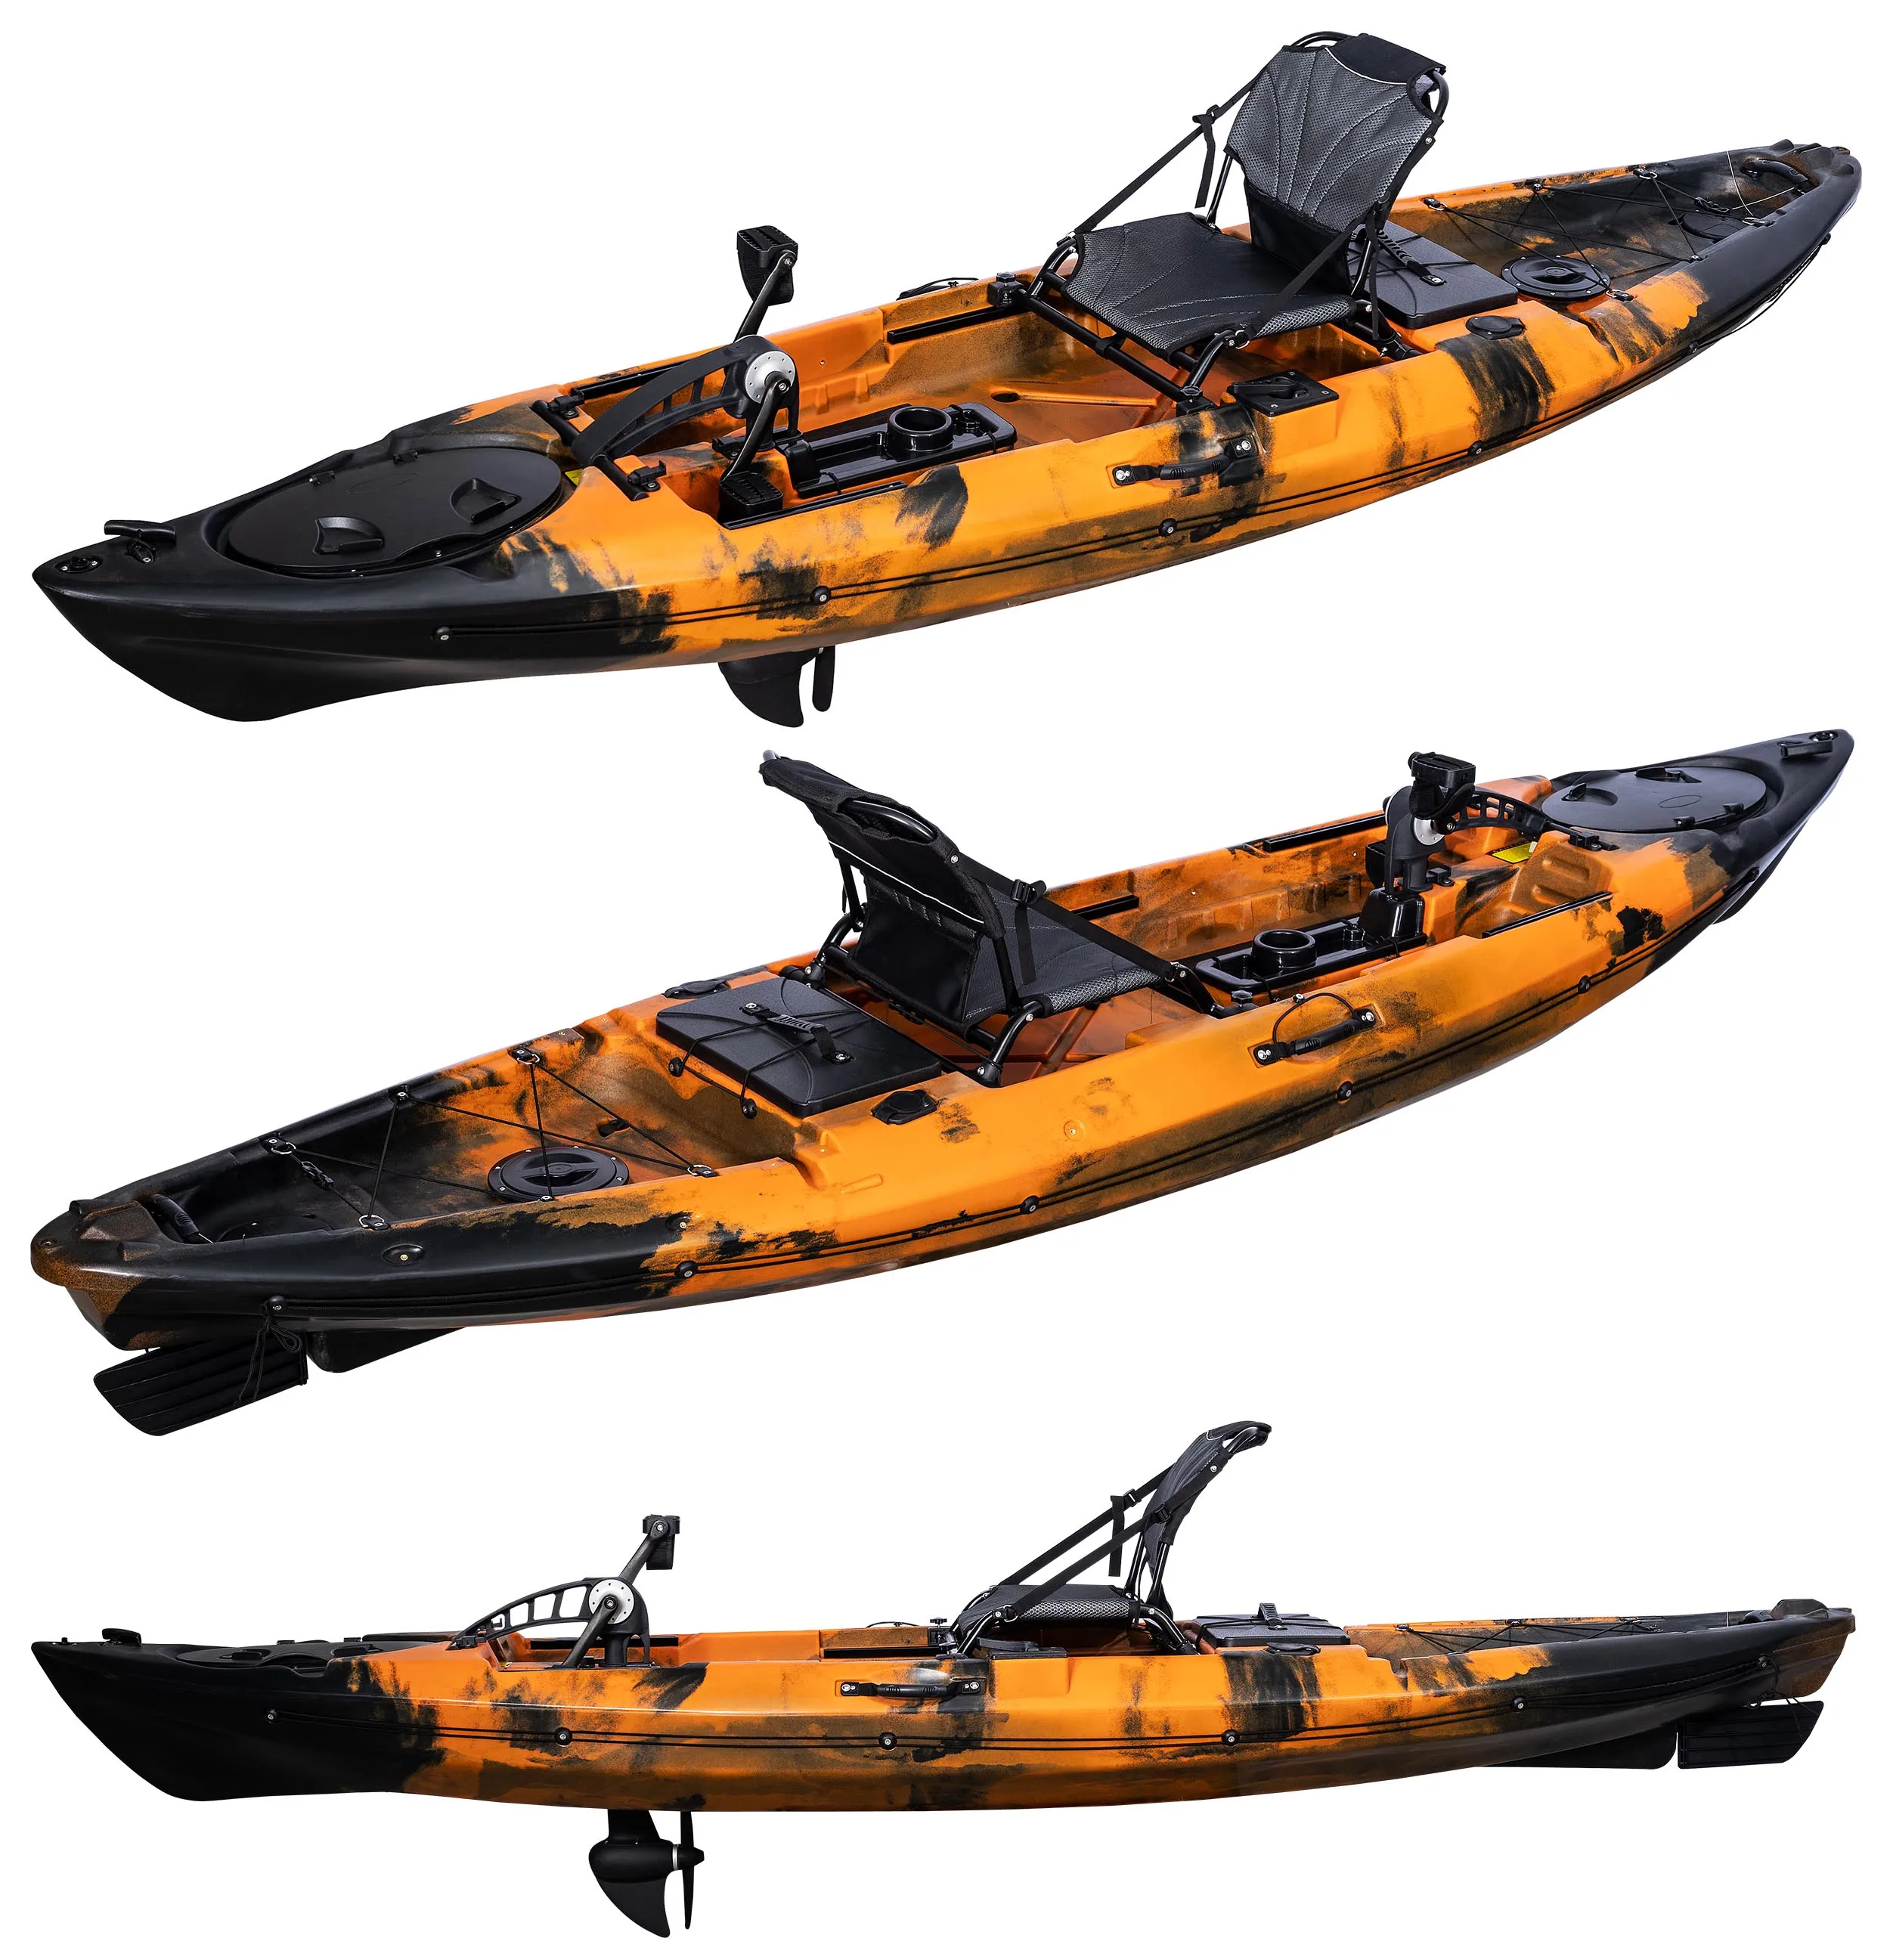 poser un monte kayak - Galaxy Kayaks France